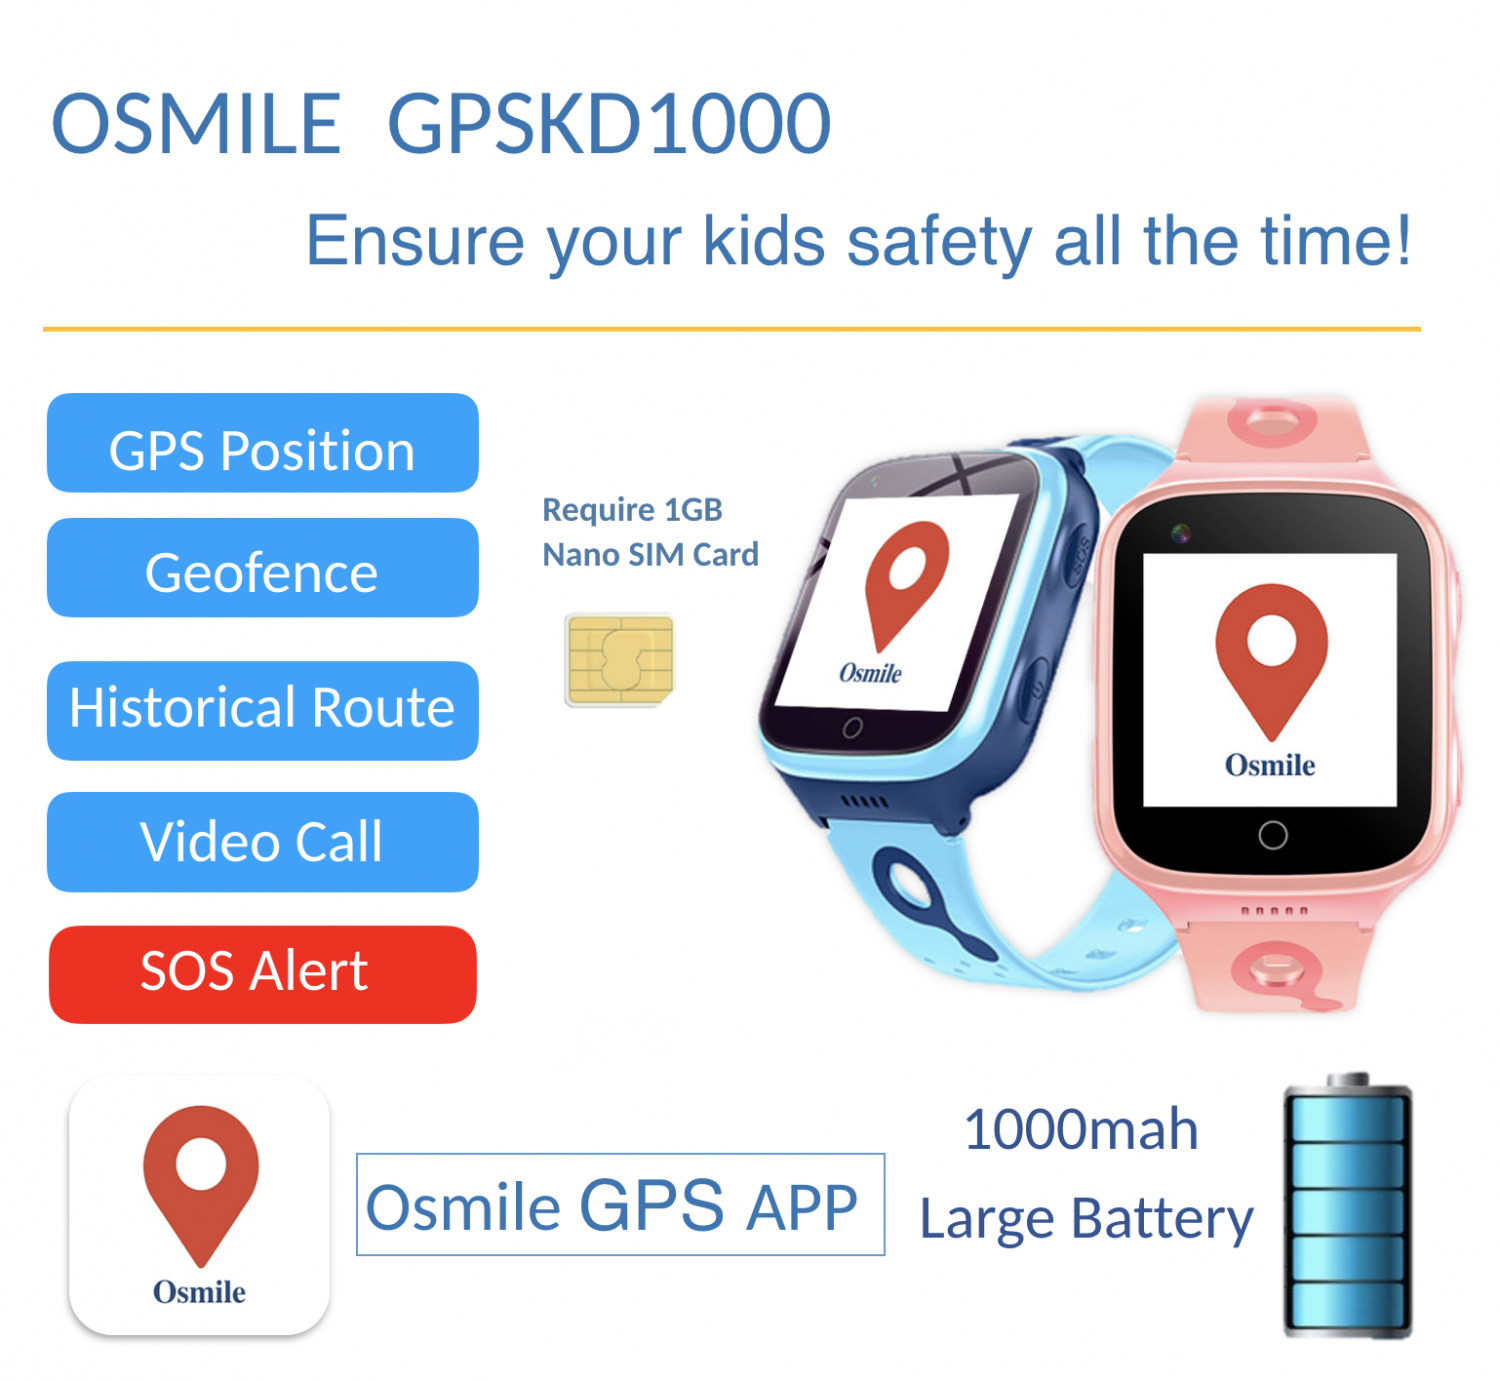 Osmile GPSKD1000 Children GPS Tracker Management Solution for Children's Organizations